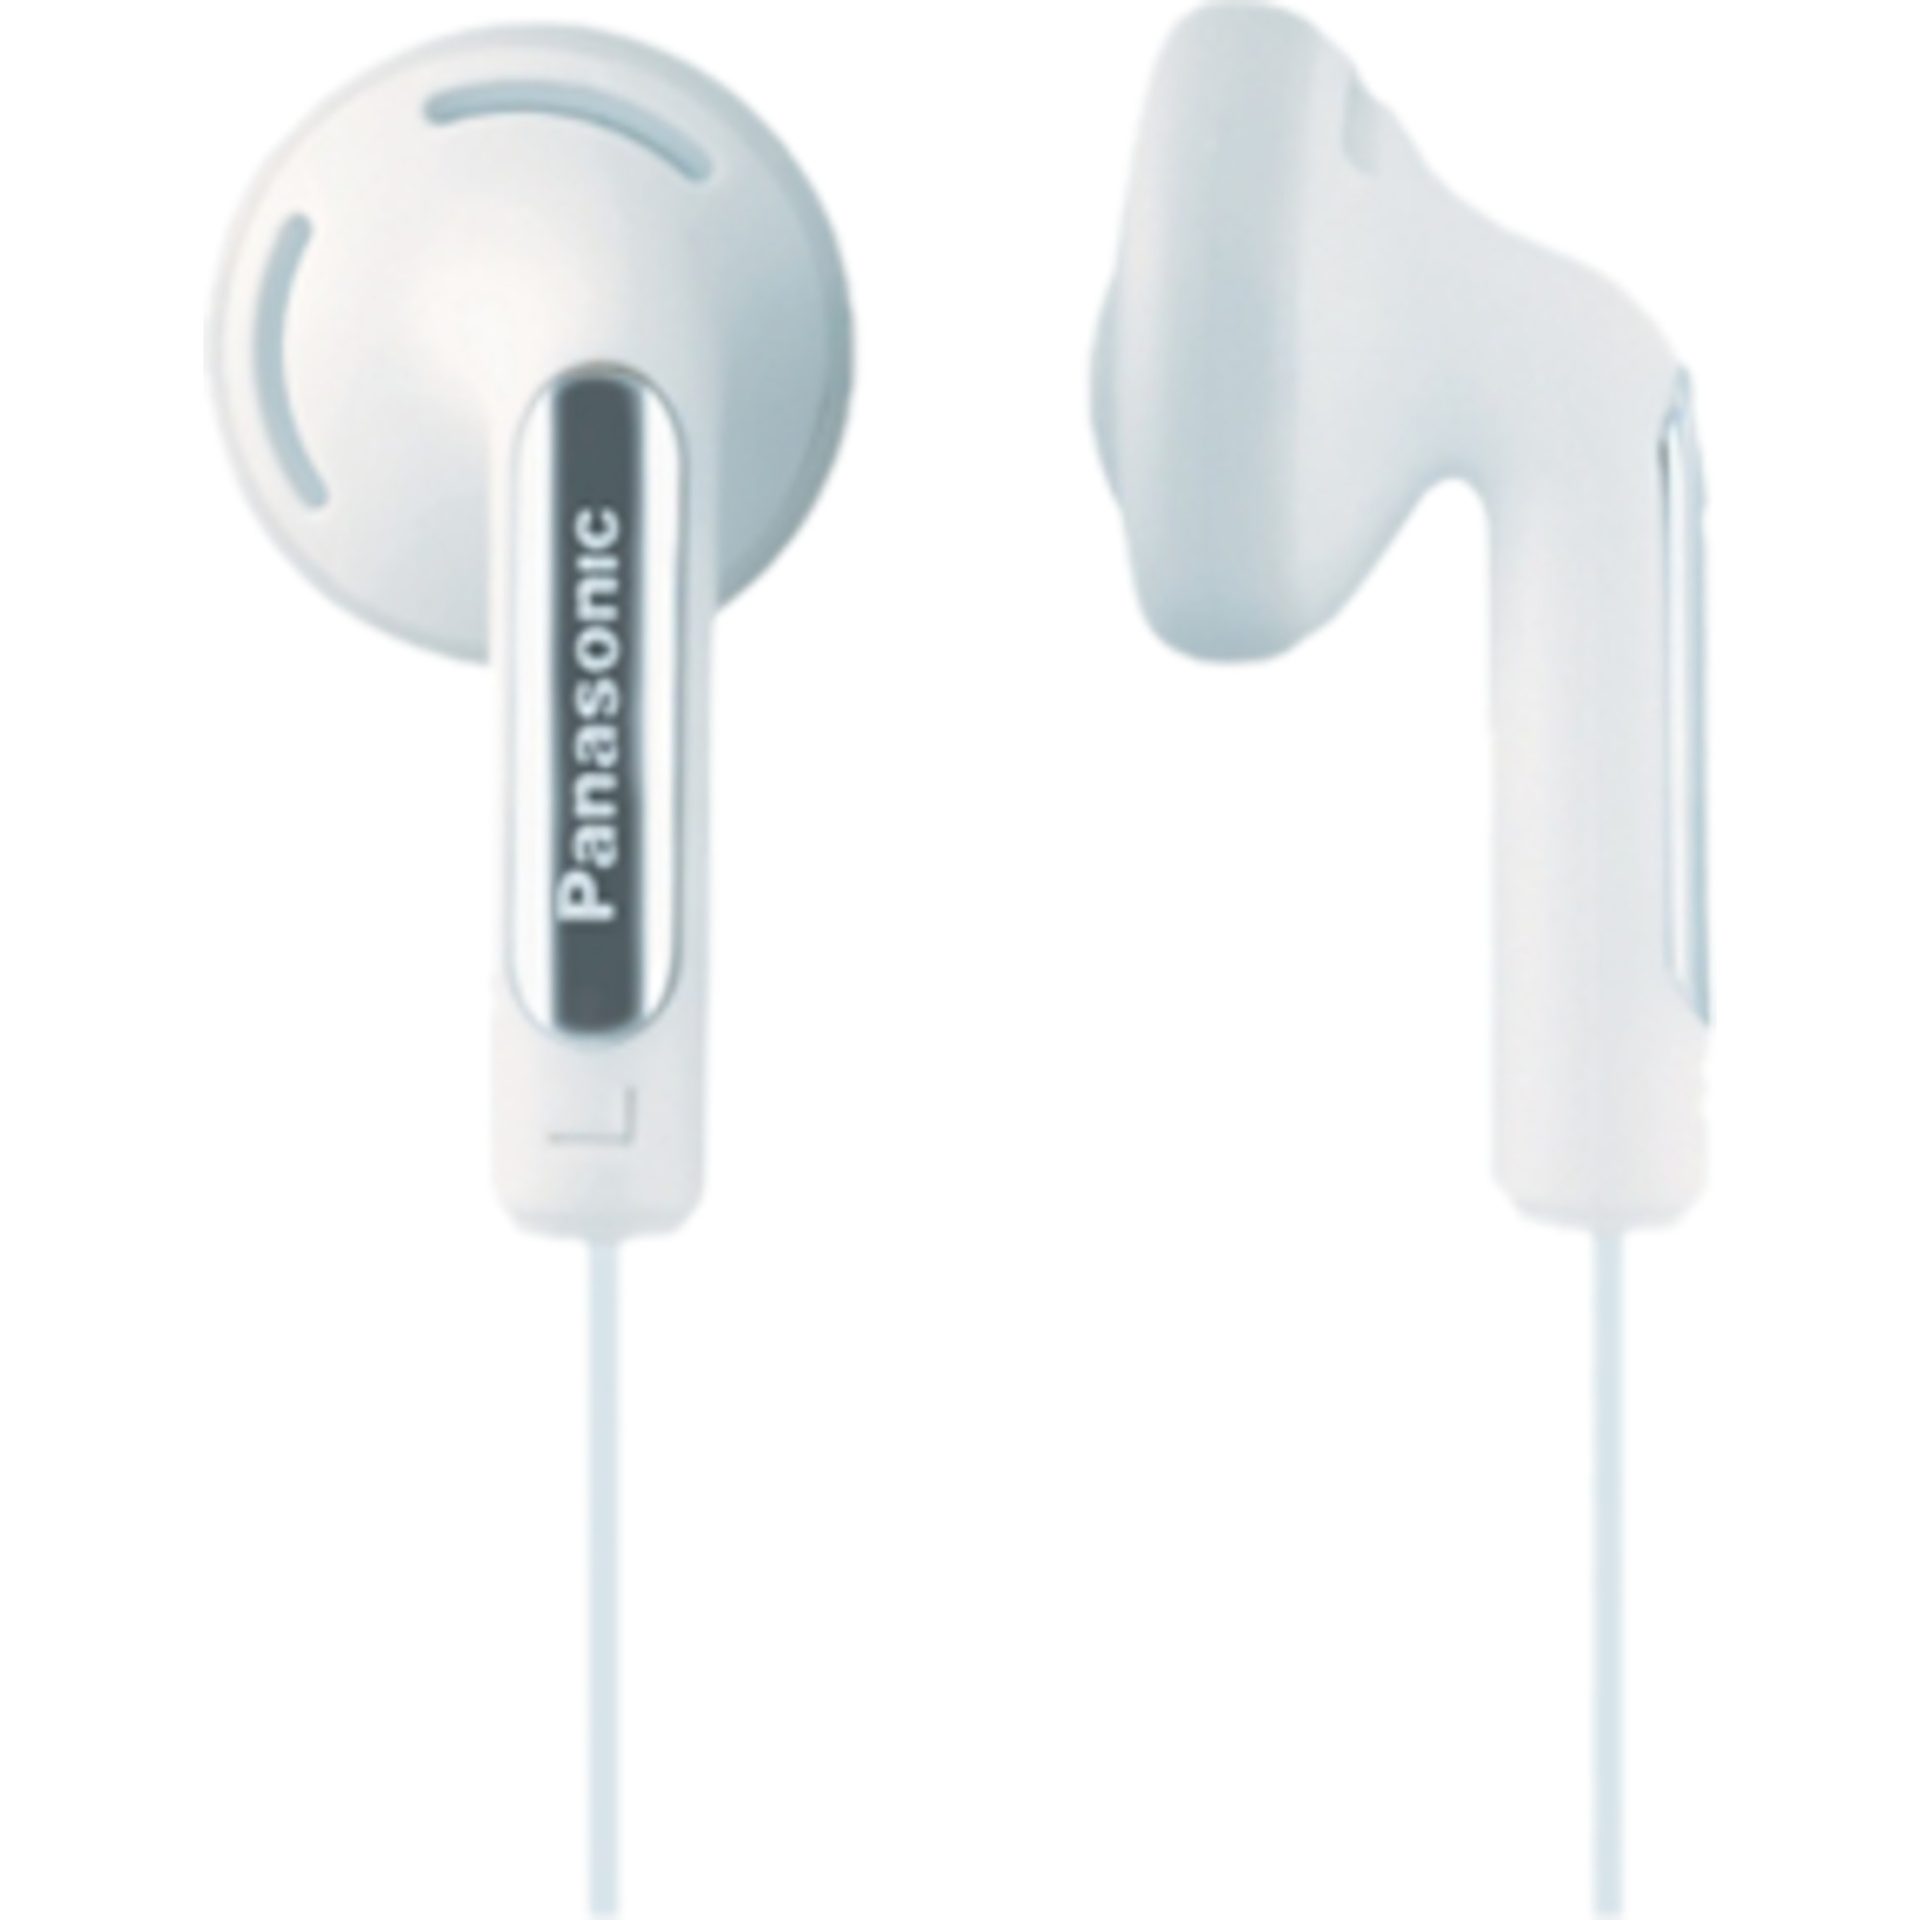 Panasonic RP-HV154 kabelová sluchátka do uší (frekvenční odezva 10 Hz - 25 kHz, 14,8mm měnič, neodymový magnet, 1,2m kabel), bílá